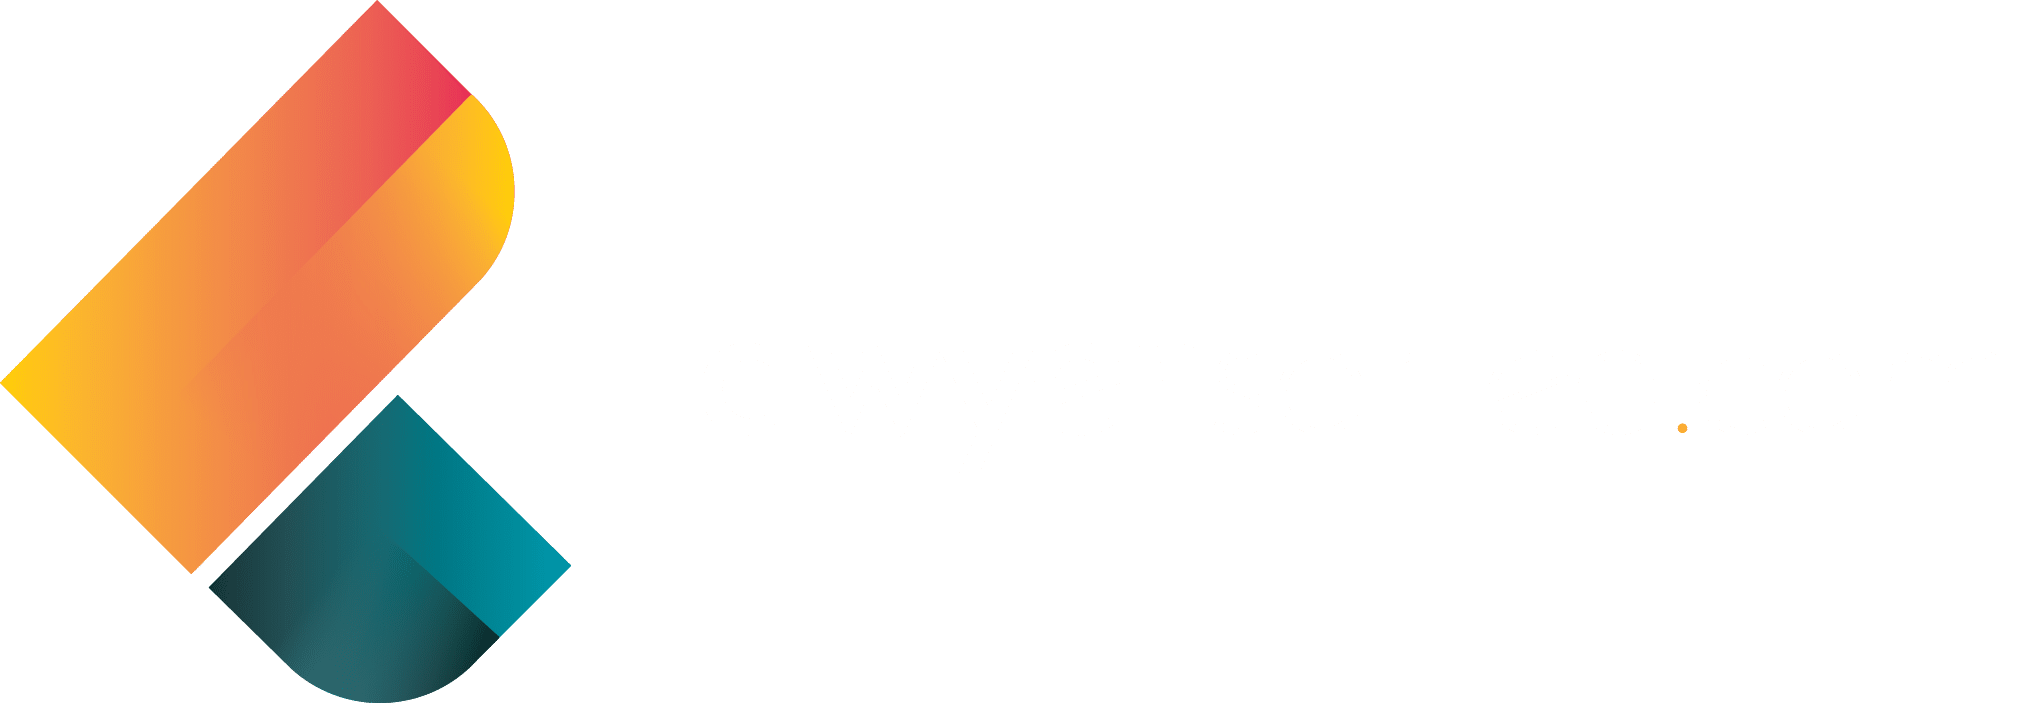 Lawyersorted